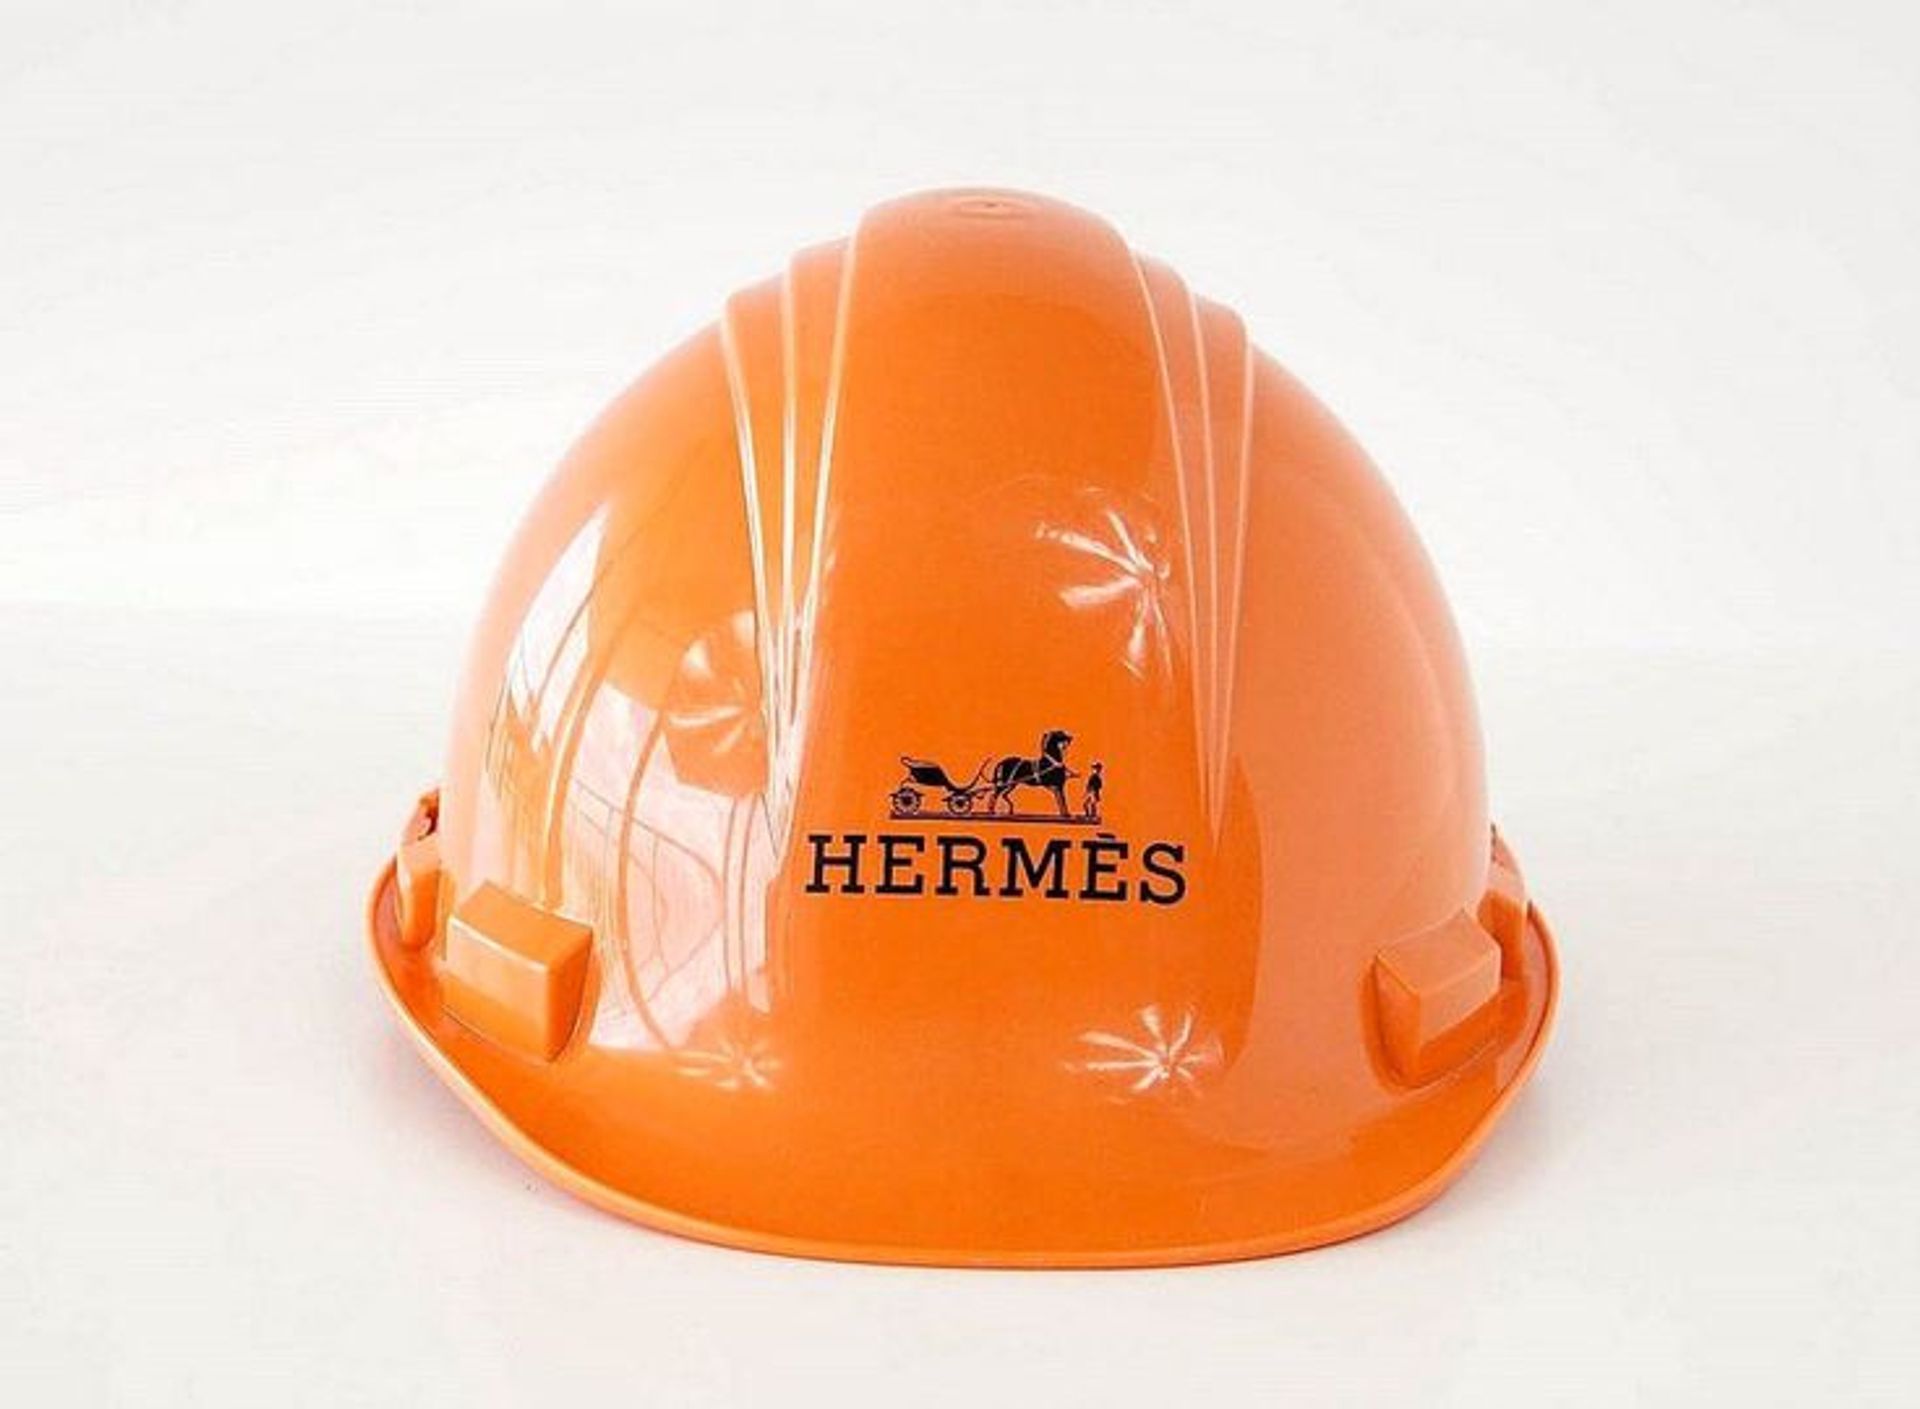 כובעי בנייה של הרמס נמכרים בכריסטיס בין 4,000 ל-8,000 דולר